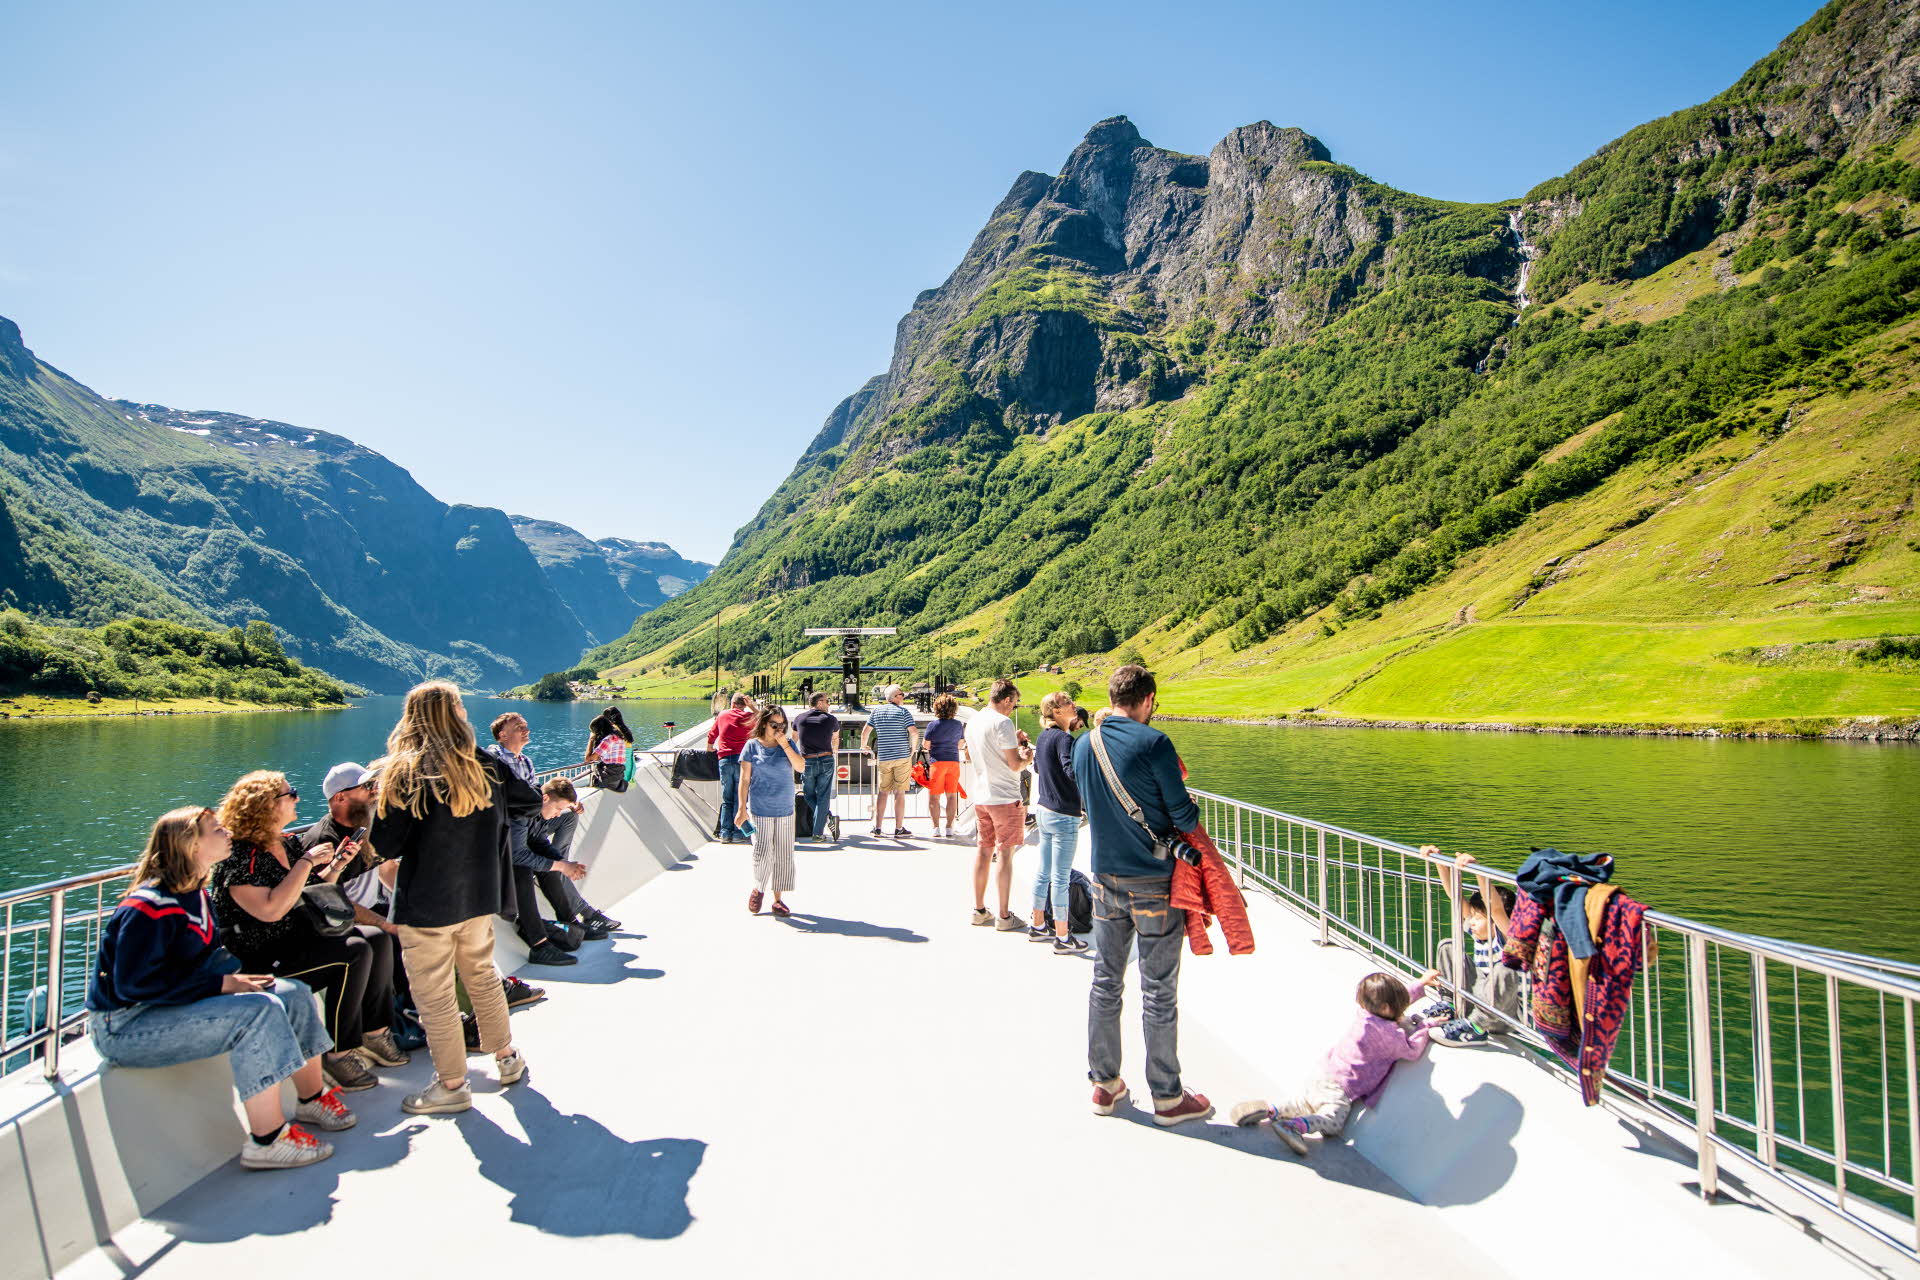 観光客のグループが印象的な景観を楽しんでいる、フューチャーオブフィヨルドのトップデッキからのネーロイフィヨルド(Naeroyfjord) のパノラマビュー